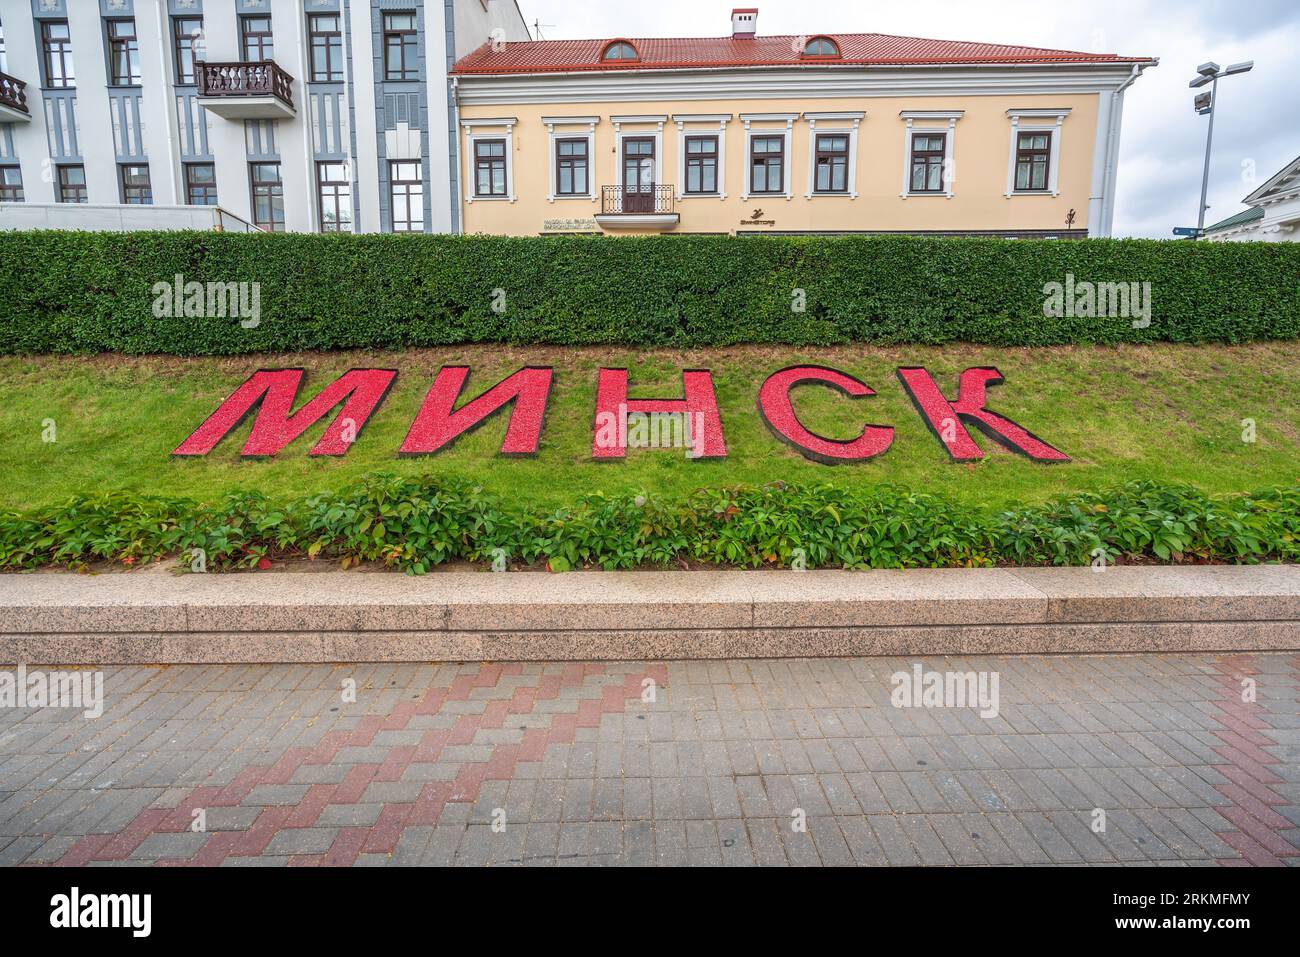 Minsker Stadtschild am Freiheitsplatz - Minsk, Belarus Stockfoto